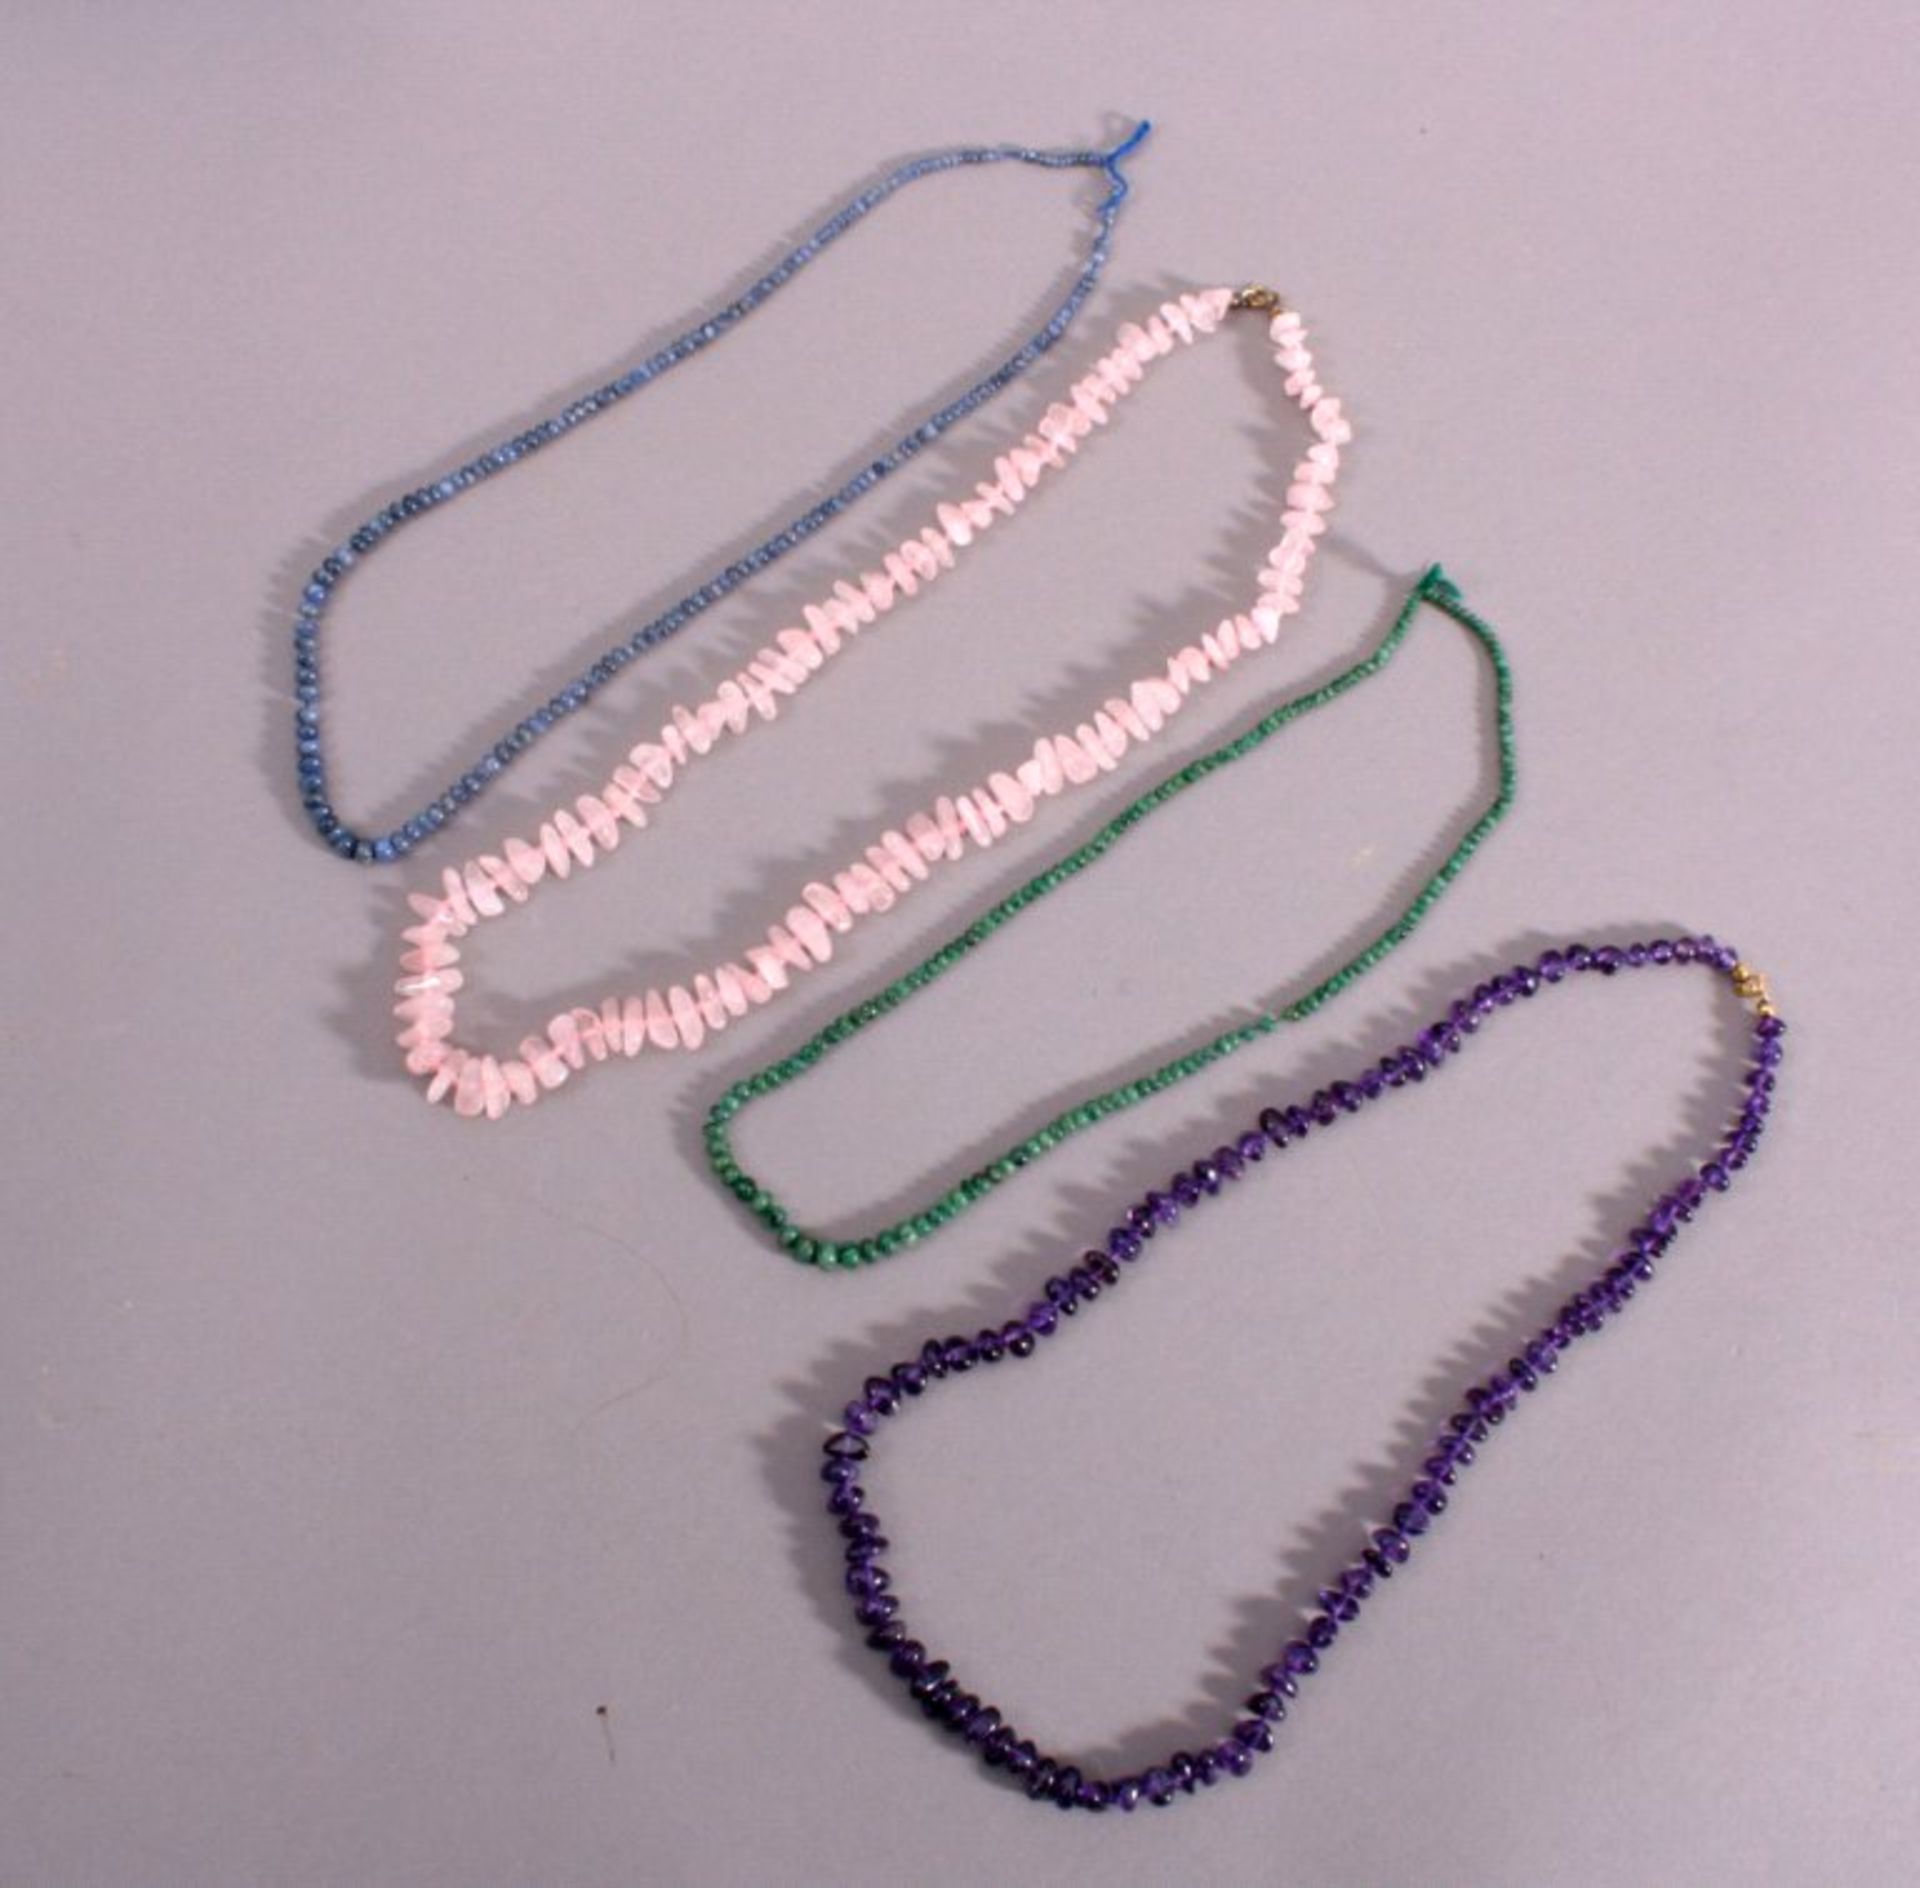 4 Halsketten1x Rosenquarzkette, naturbelassene und polierte Steine,vergoldete Schließe, ca. L-60